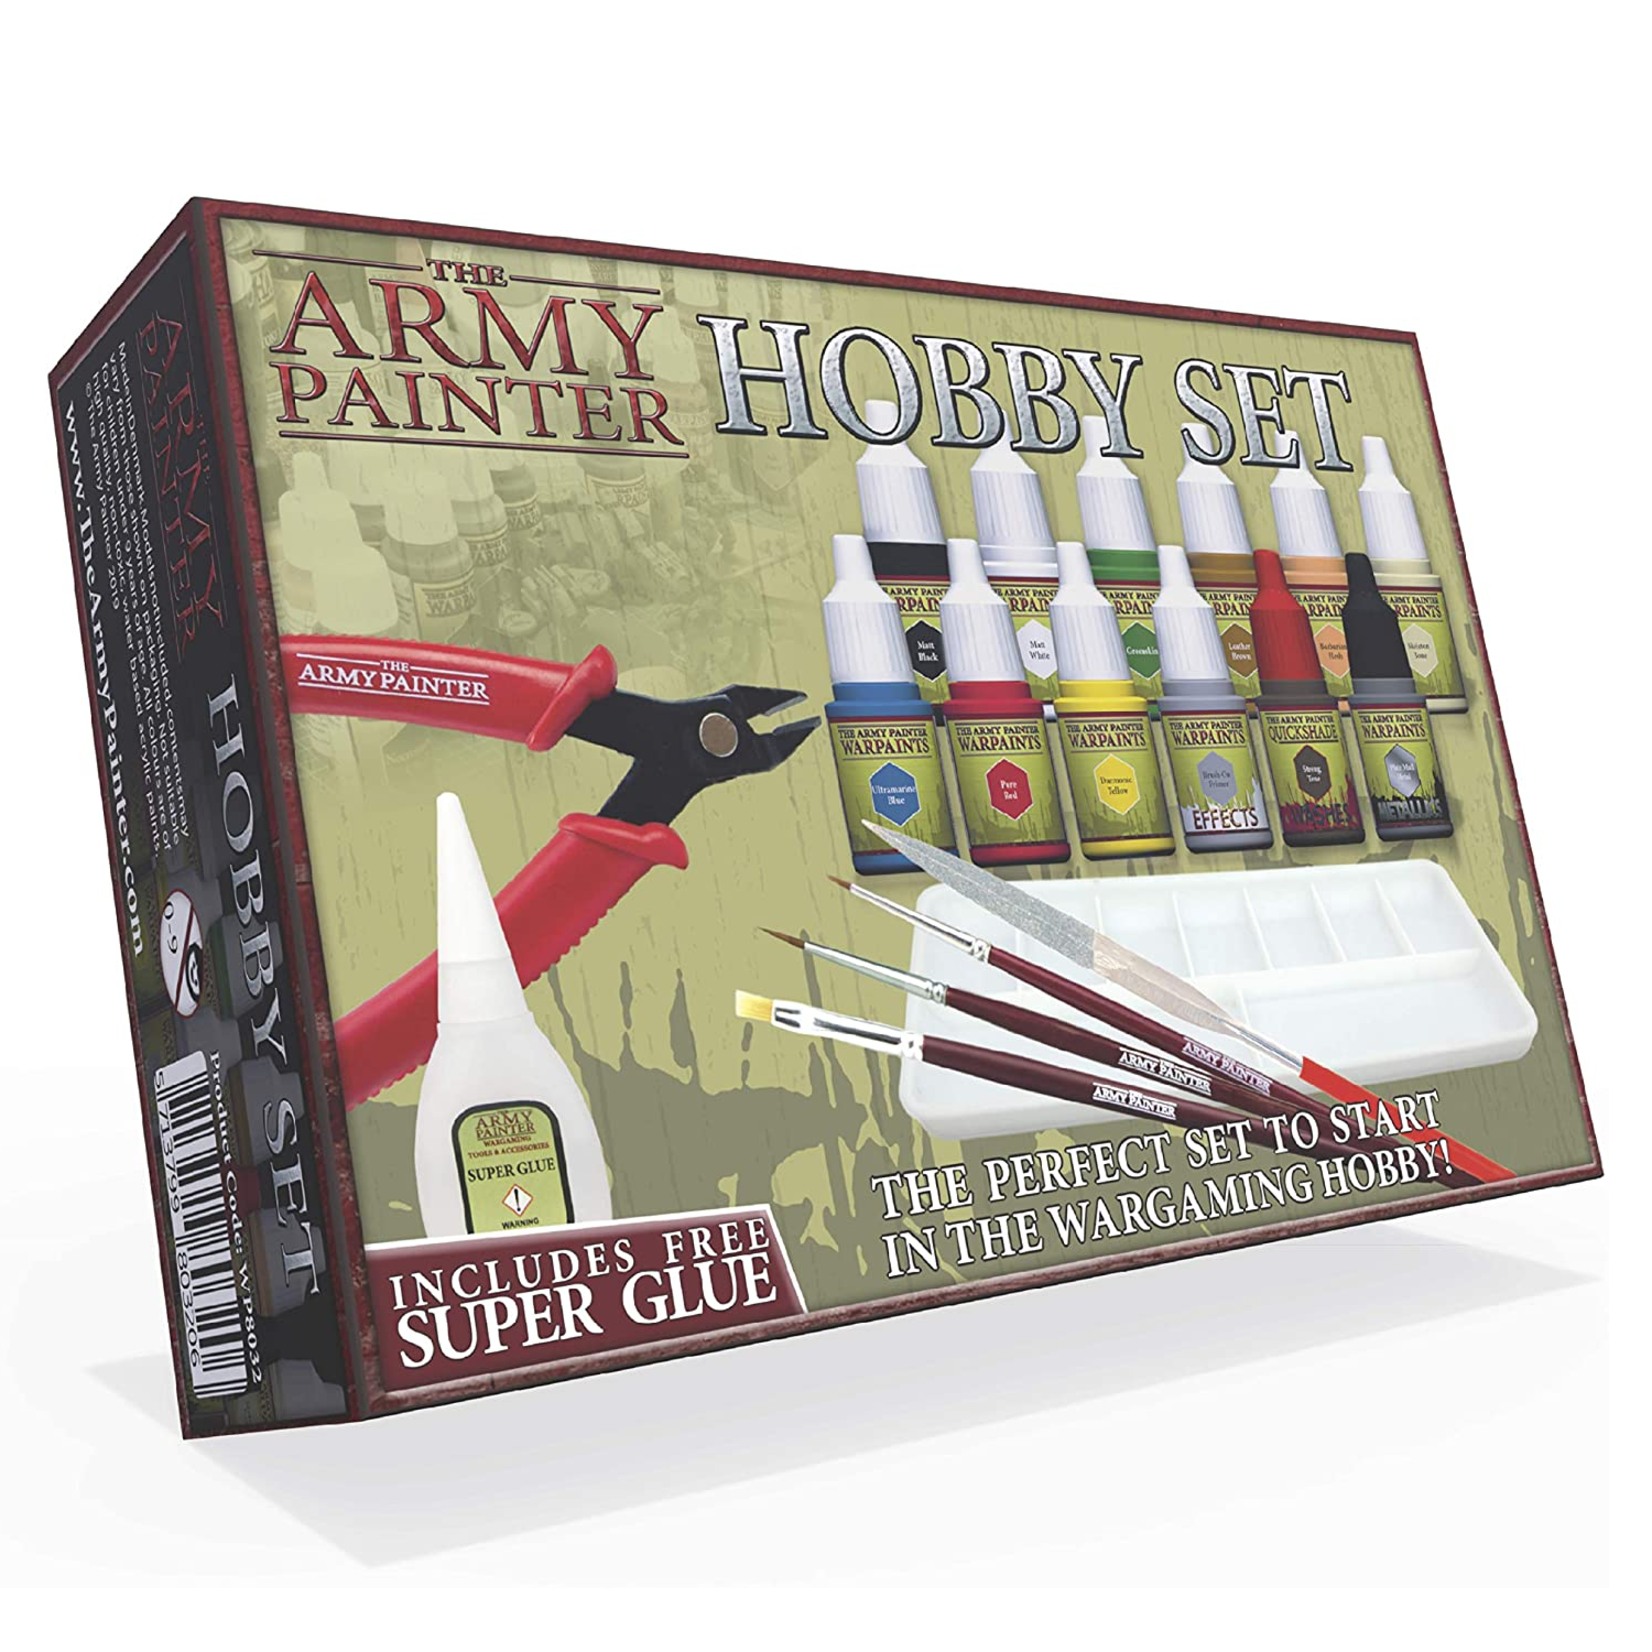 Army Painter Army Painter Hobby Starter Hobby Set